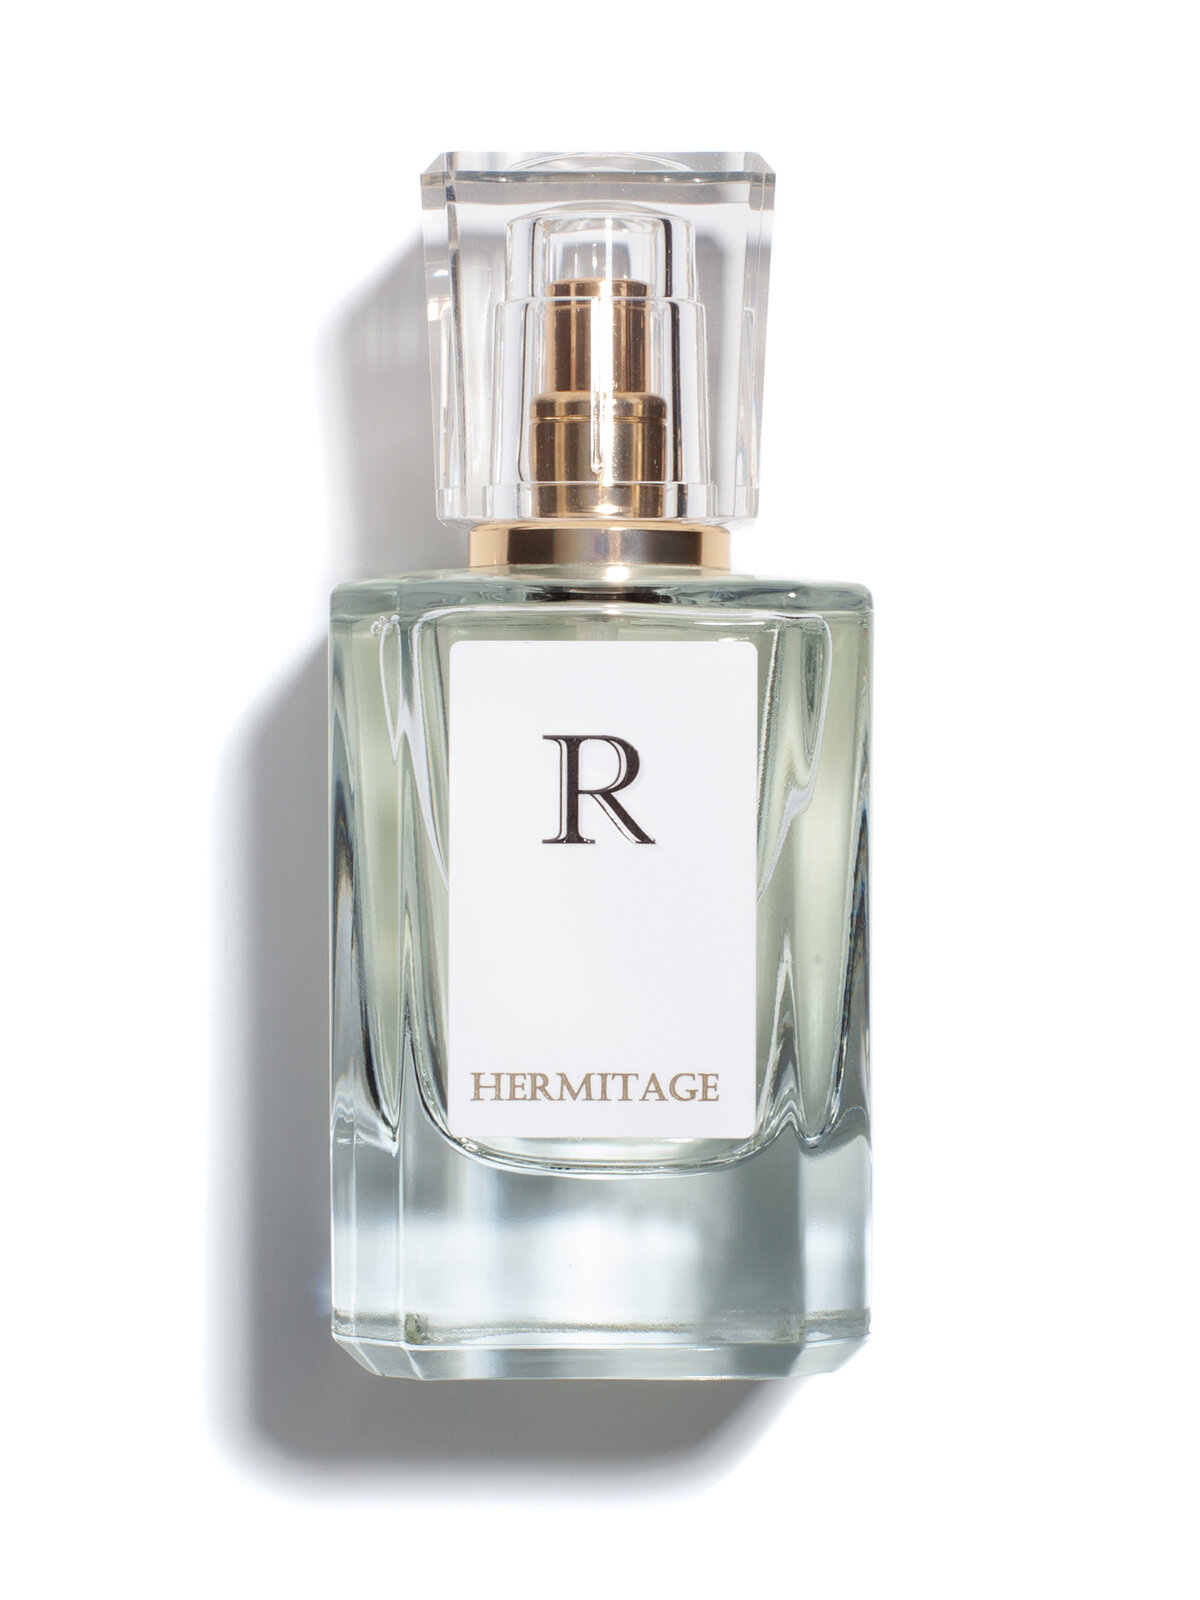 Парфюмерная вода женская, "HERMITAGE - R" духи женские, духи, женский парфюм, парфюм, парфюмерия, туалетная вода, 50 мл.